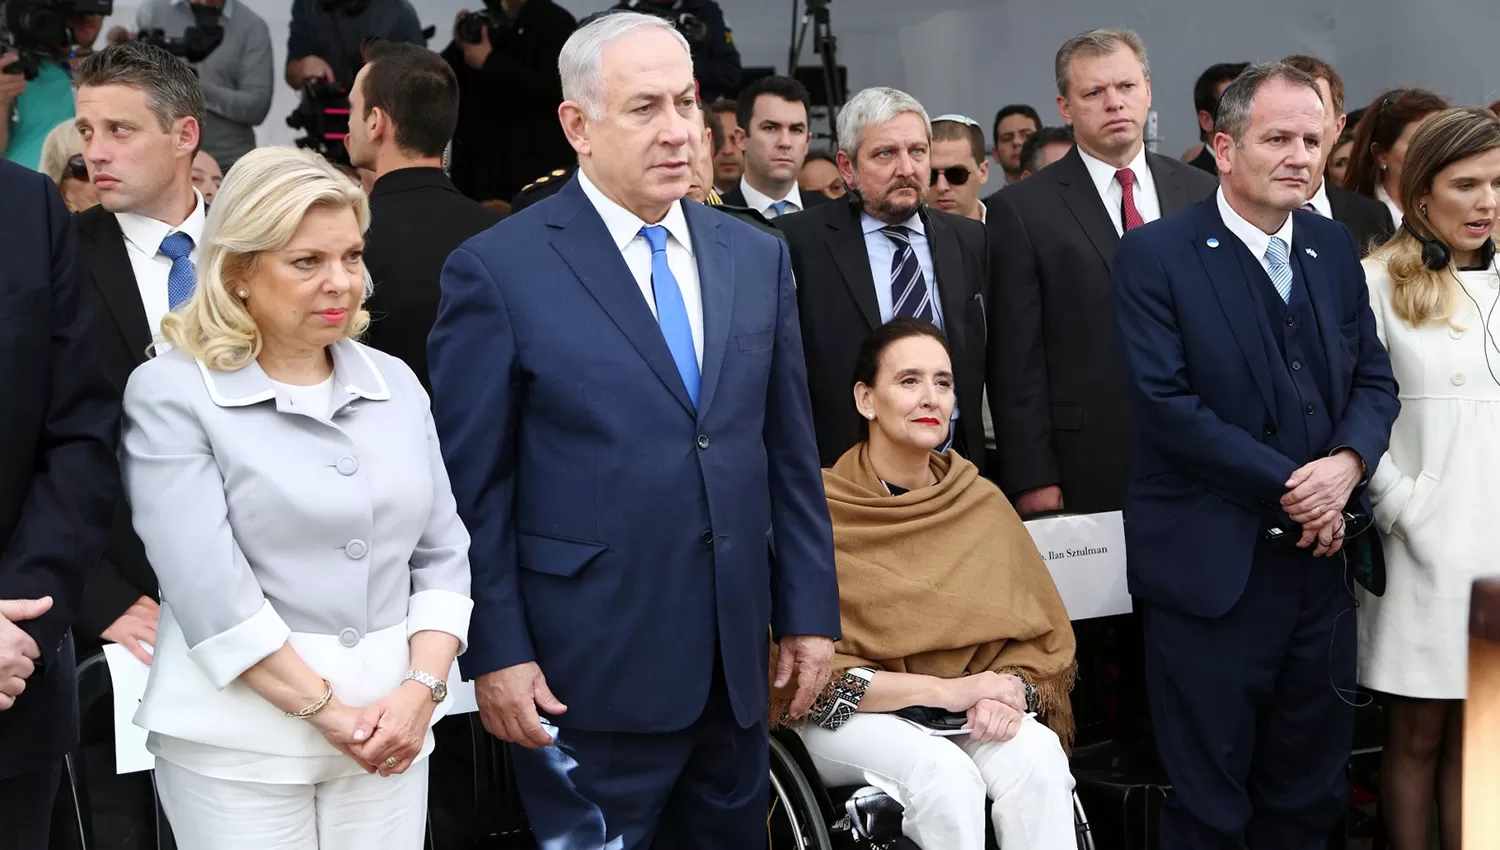 VISITA OFICIAL. El primer ministro de Israel, Benjamín Netanyahu, en el acto que se realizó en la sede de la AMIA. FOTO DE DYN. 